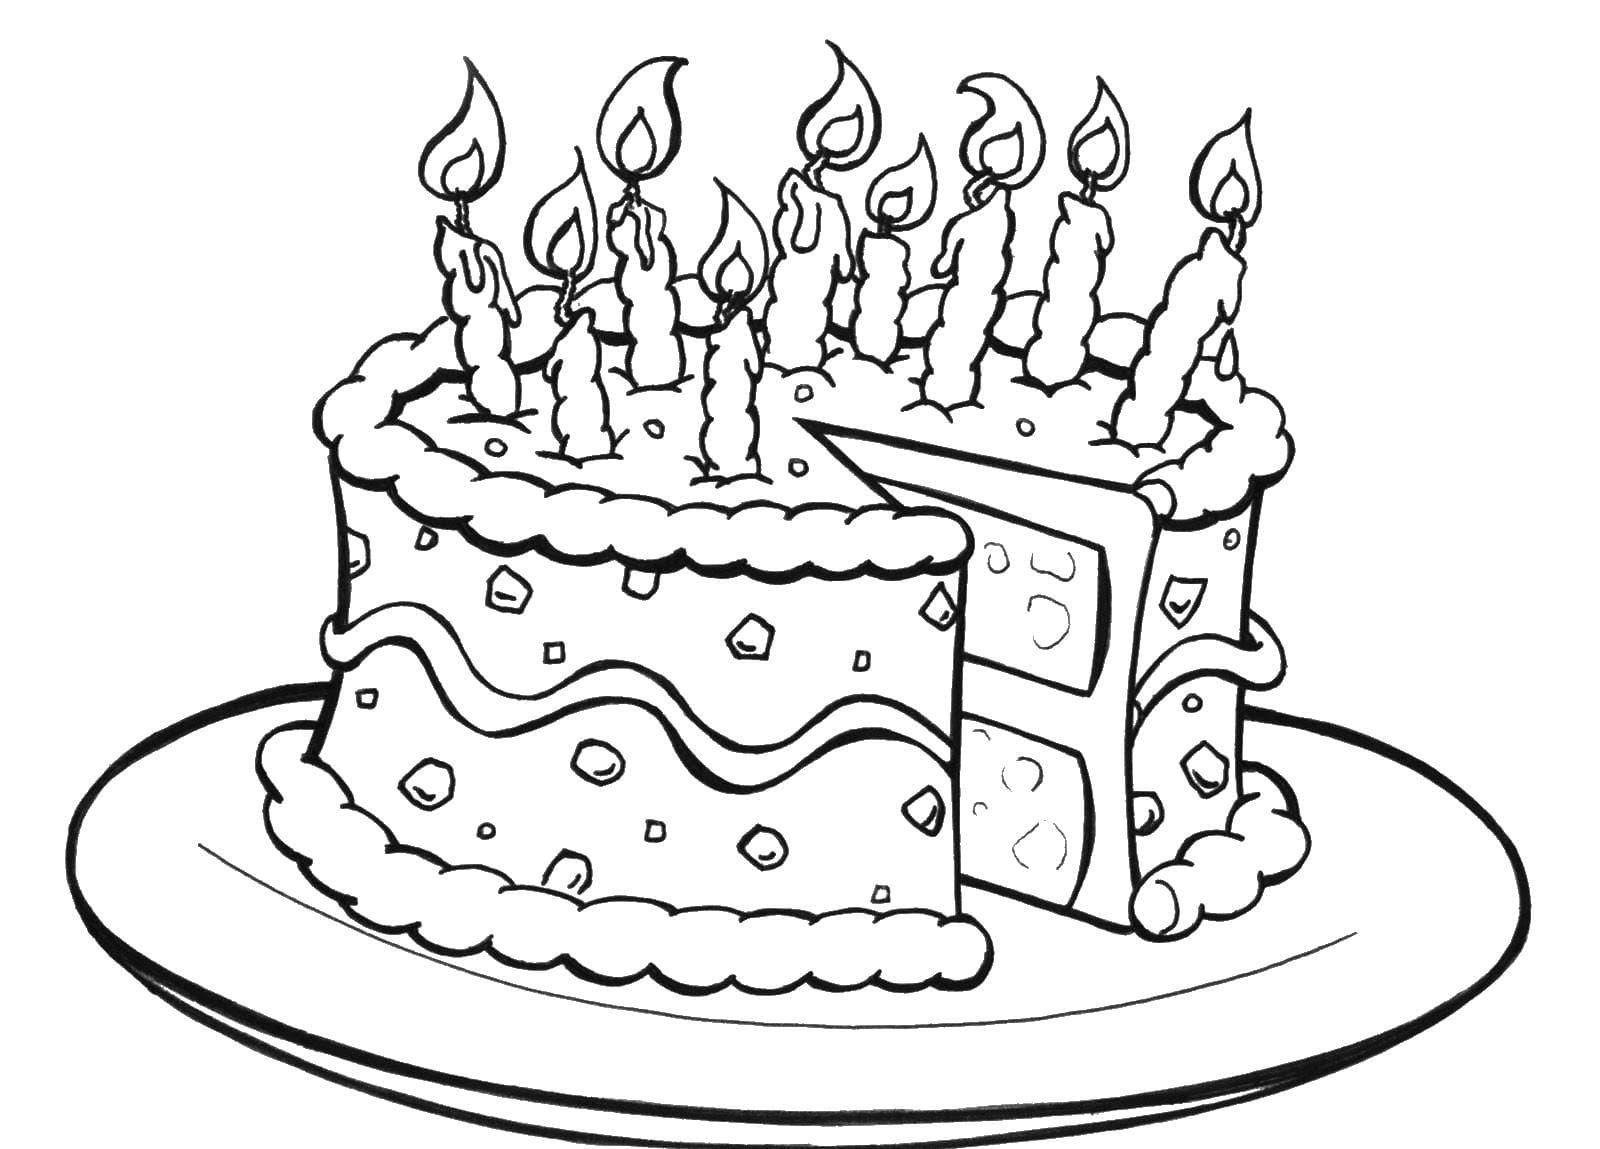 דף צביעה של עוגת יום הולדת יפה עם תשעה נרות